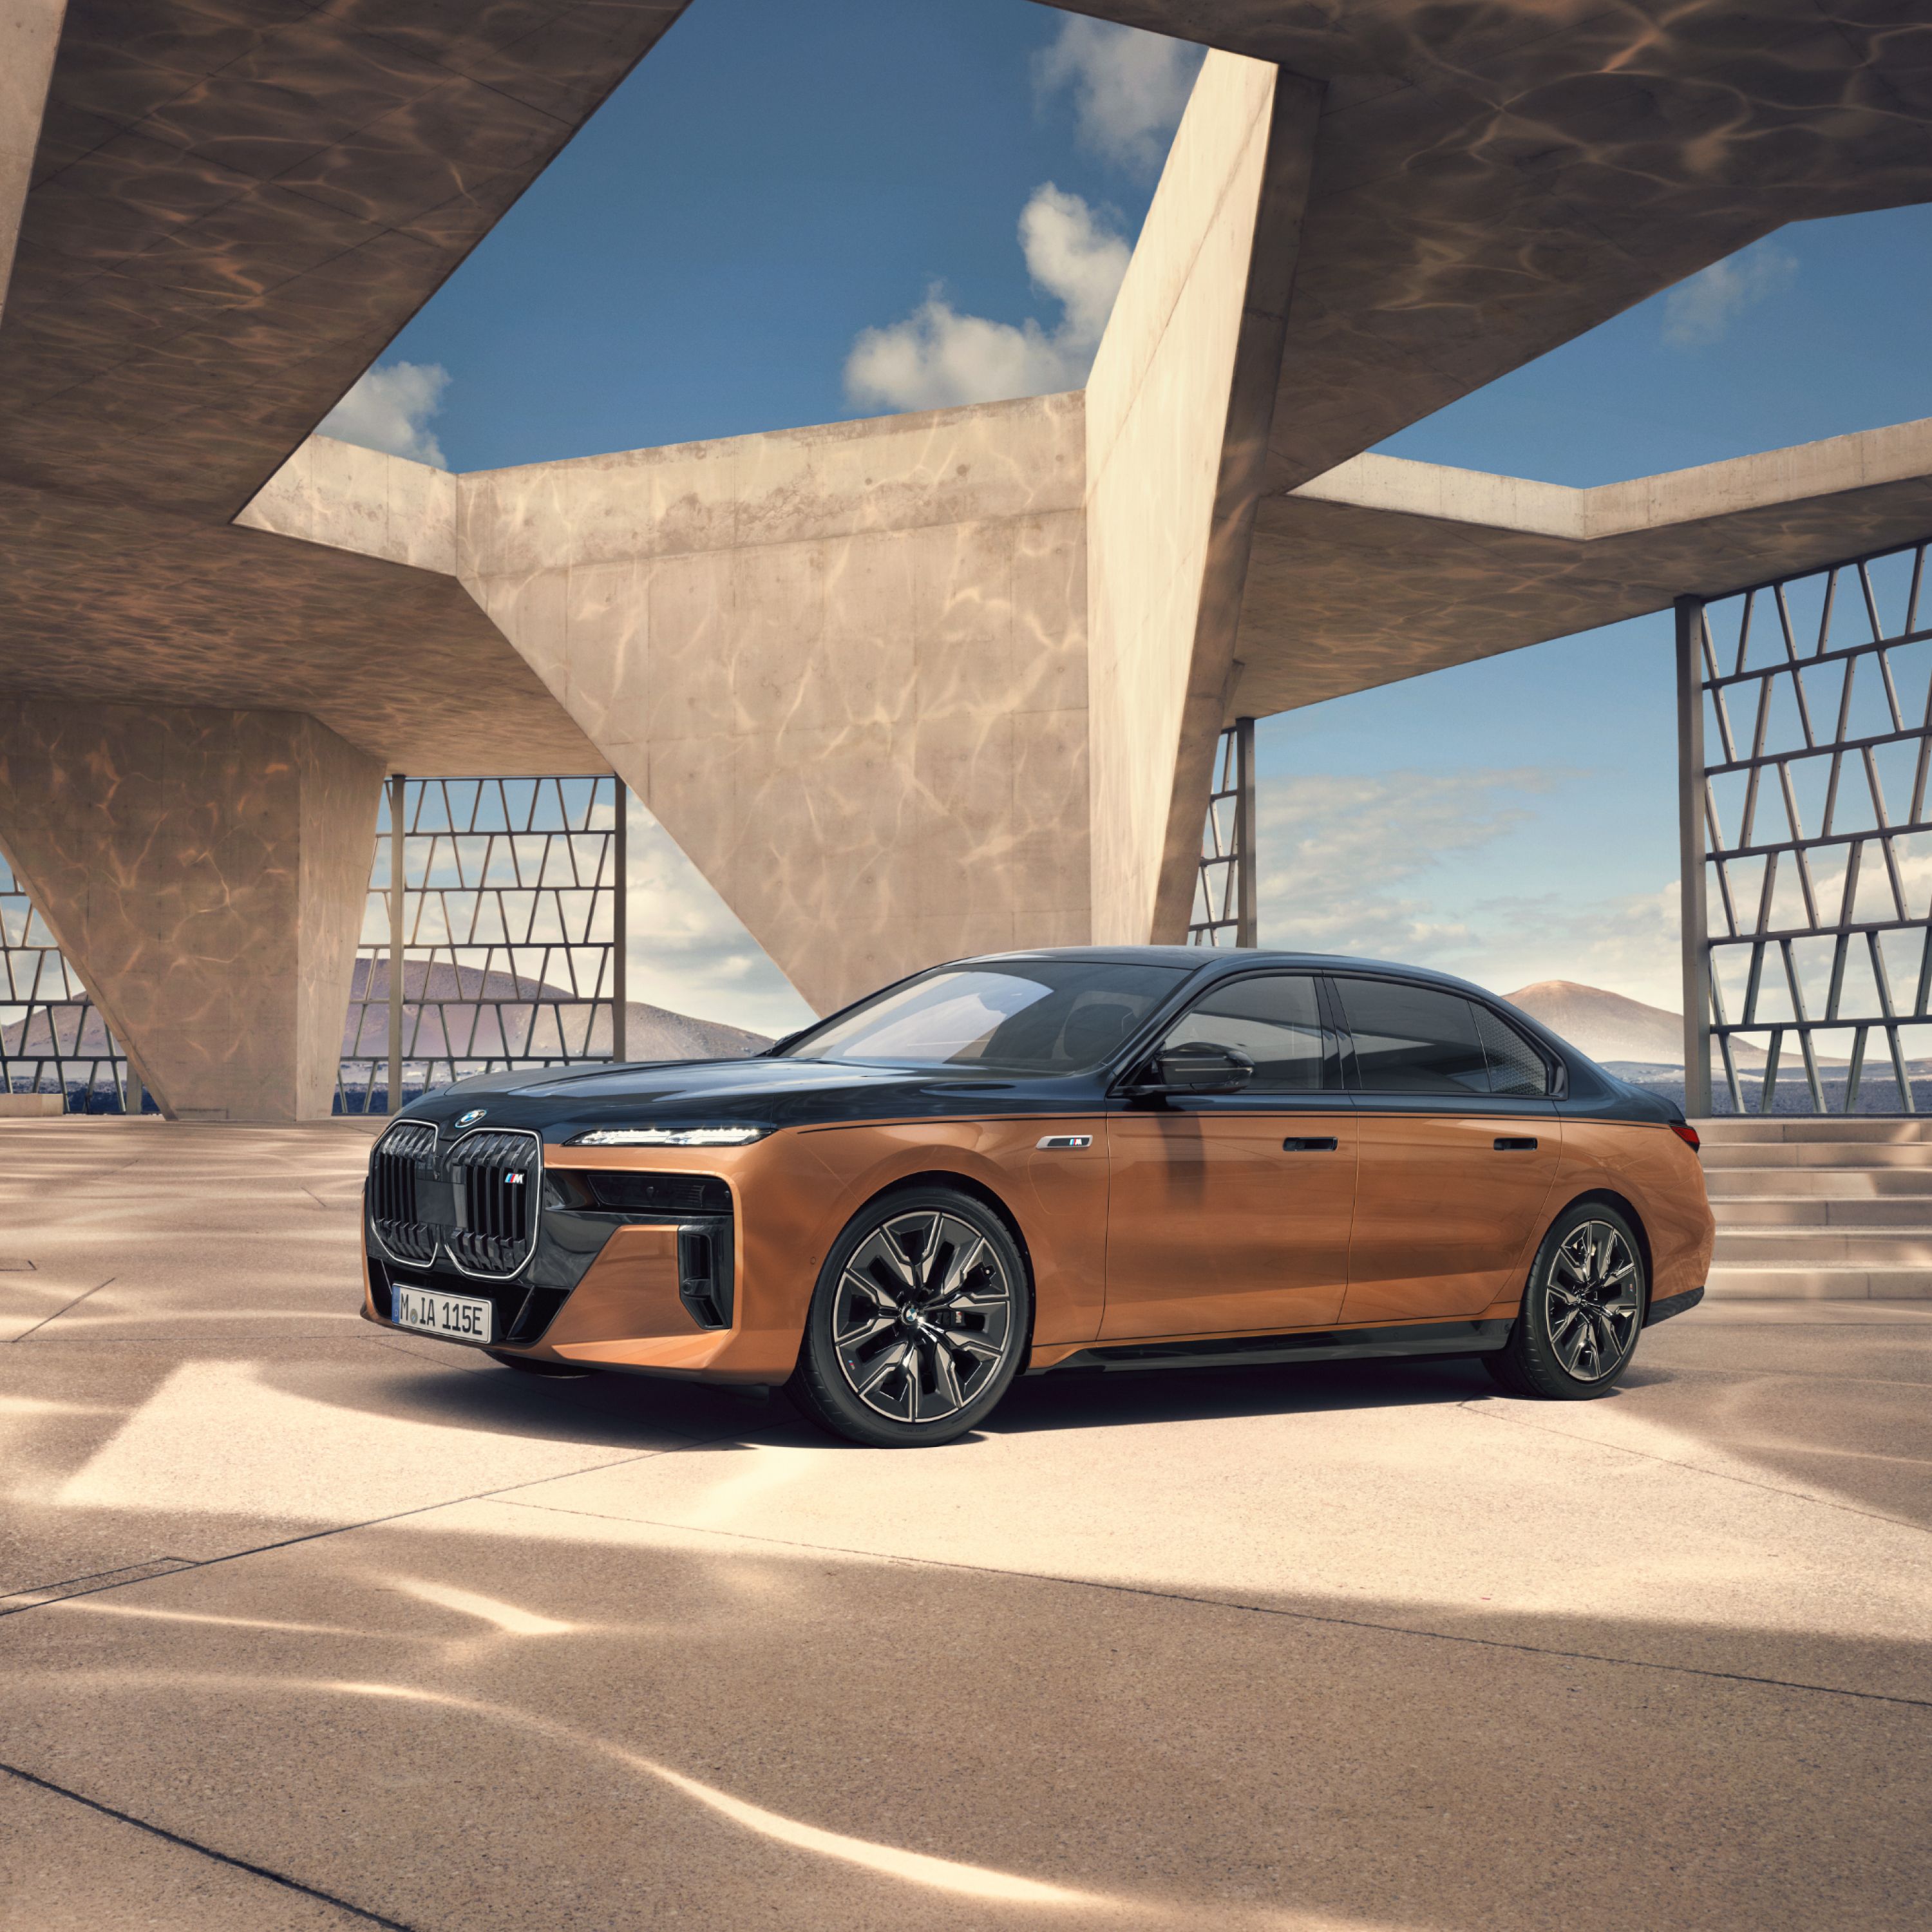 BMW i7 M70 xDrive Sedan s dvoubarevným lakováním v moderní architektuře s panoramatem hor v pozadí